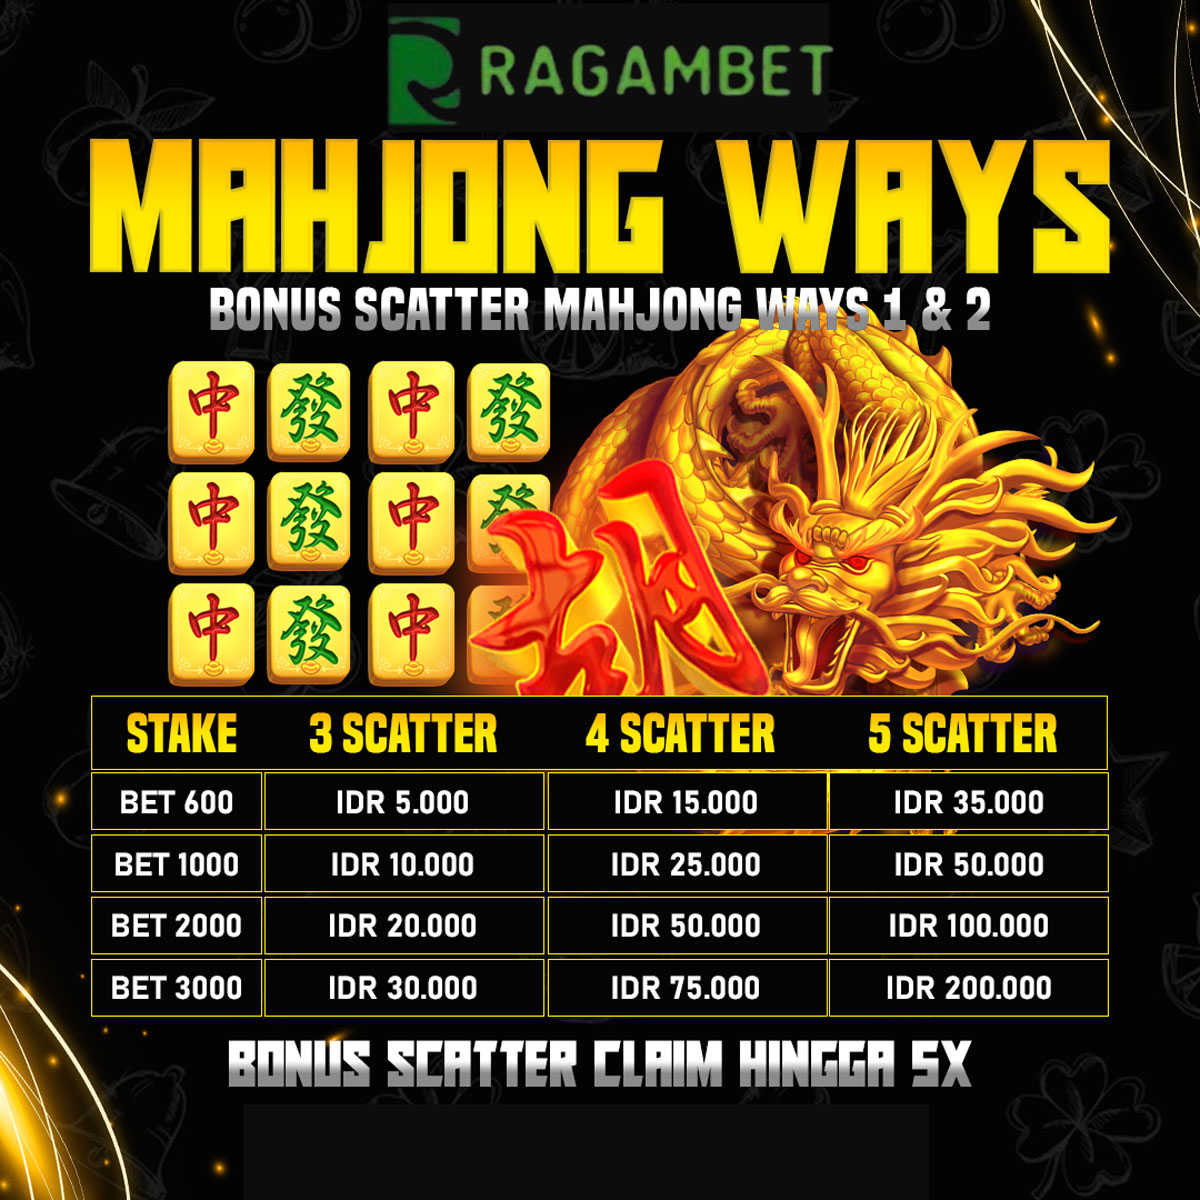 RAGAMBET bonus scatter mahjong ways klaim 5x sehari